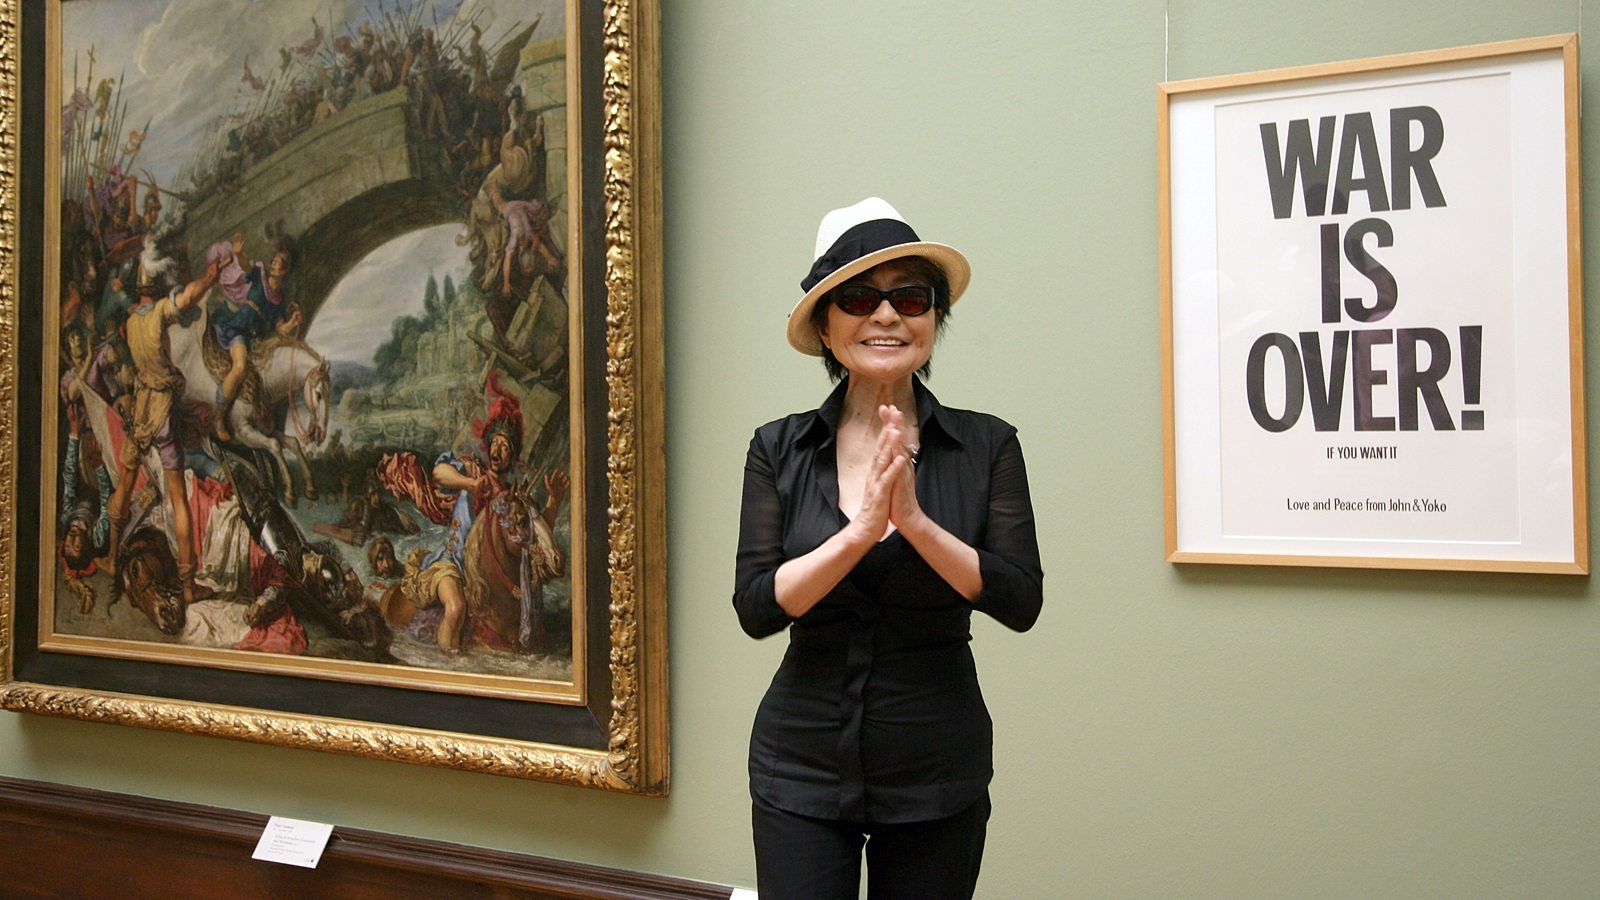 Die Künstlerin Yoko Ono stellt am Dienstag (12.06.2007) in der Kunsthalle Bremen ein noch gemeinsam mit ihrem Mann John Lennon konzipiertes Friedensplakat "War is over!" in der Abteilung der alten niederländischen Meister vor.